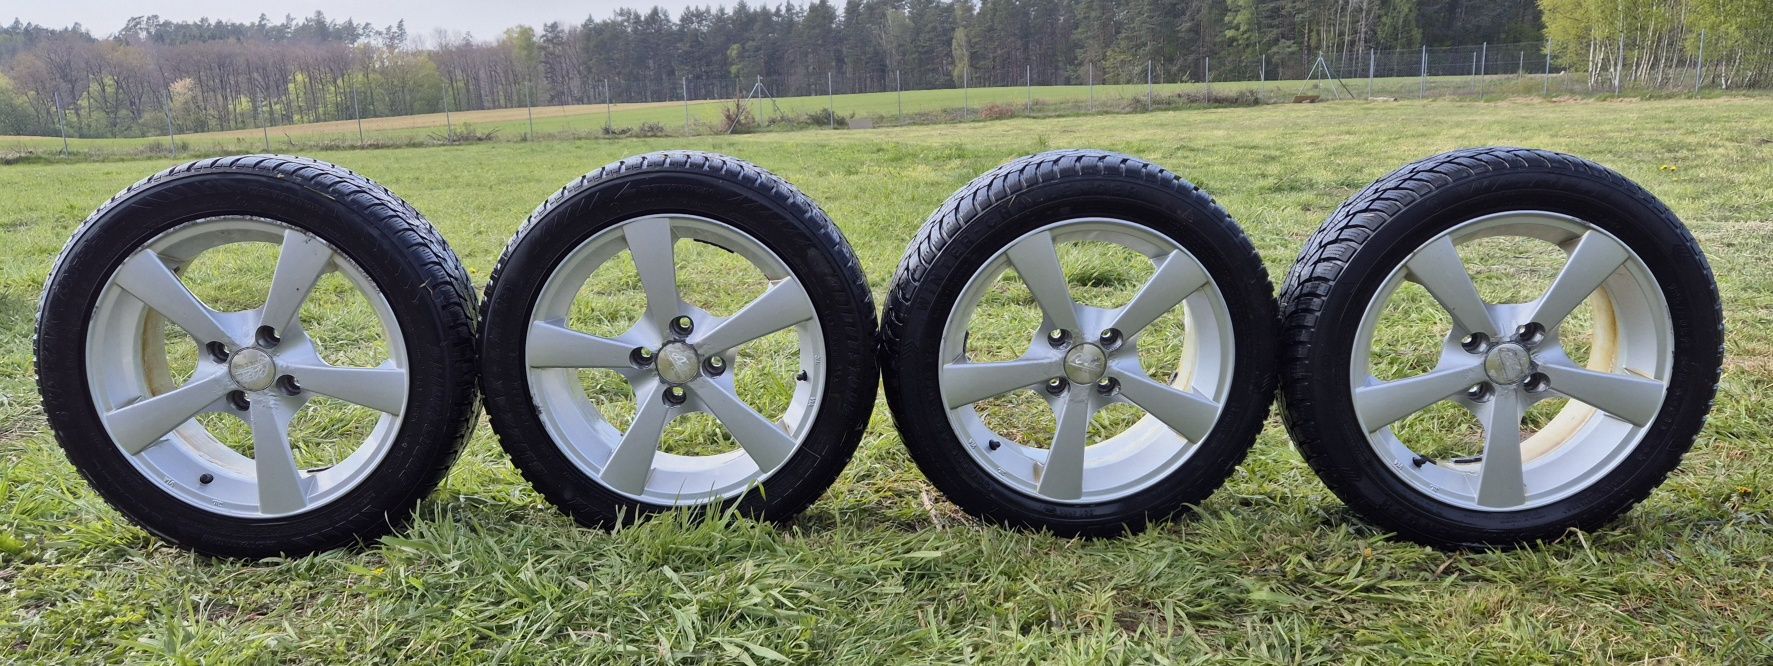 Alufelgi komplet Raze wheels 15' 4x100 Opony zimowe 195/50